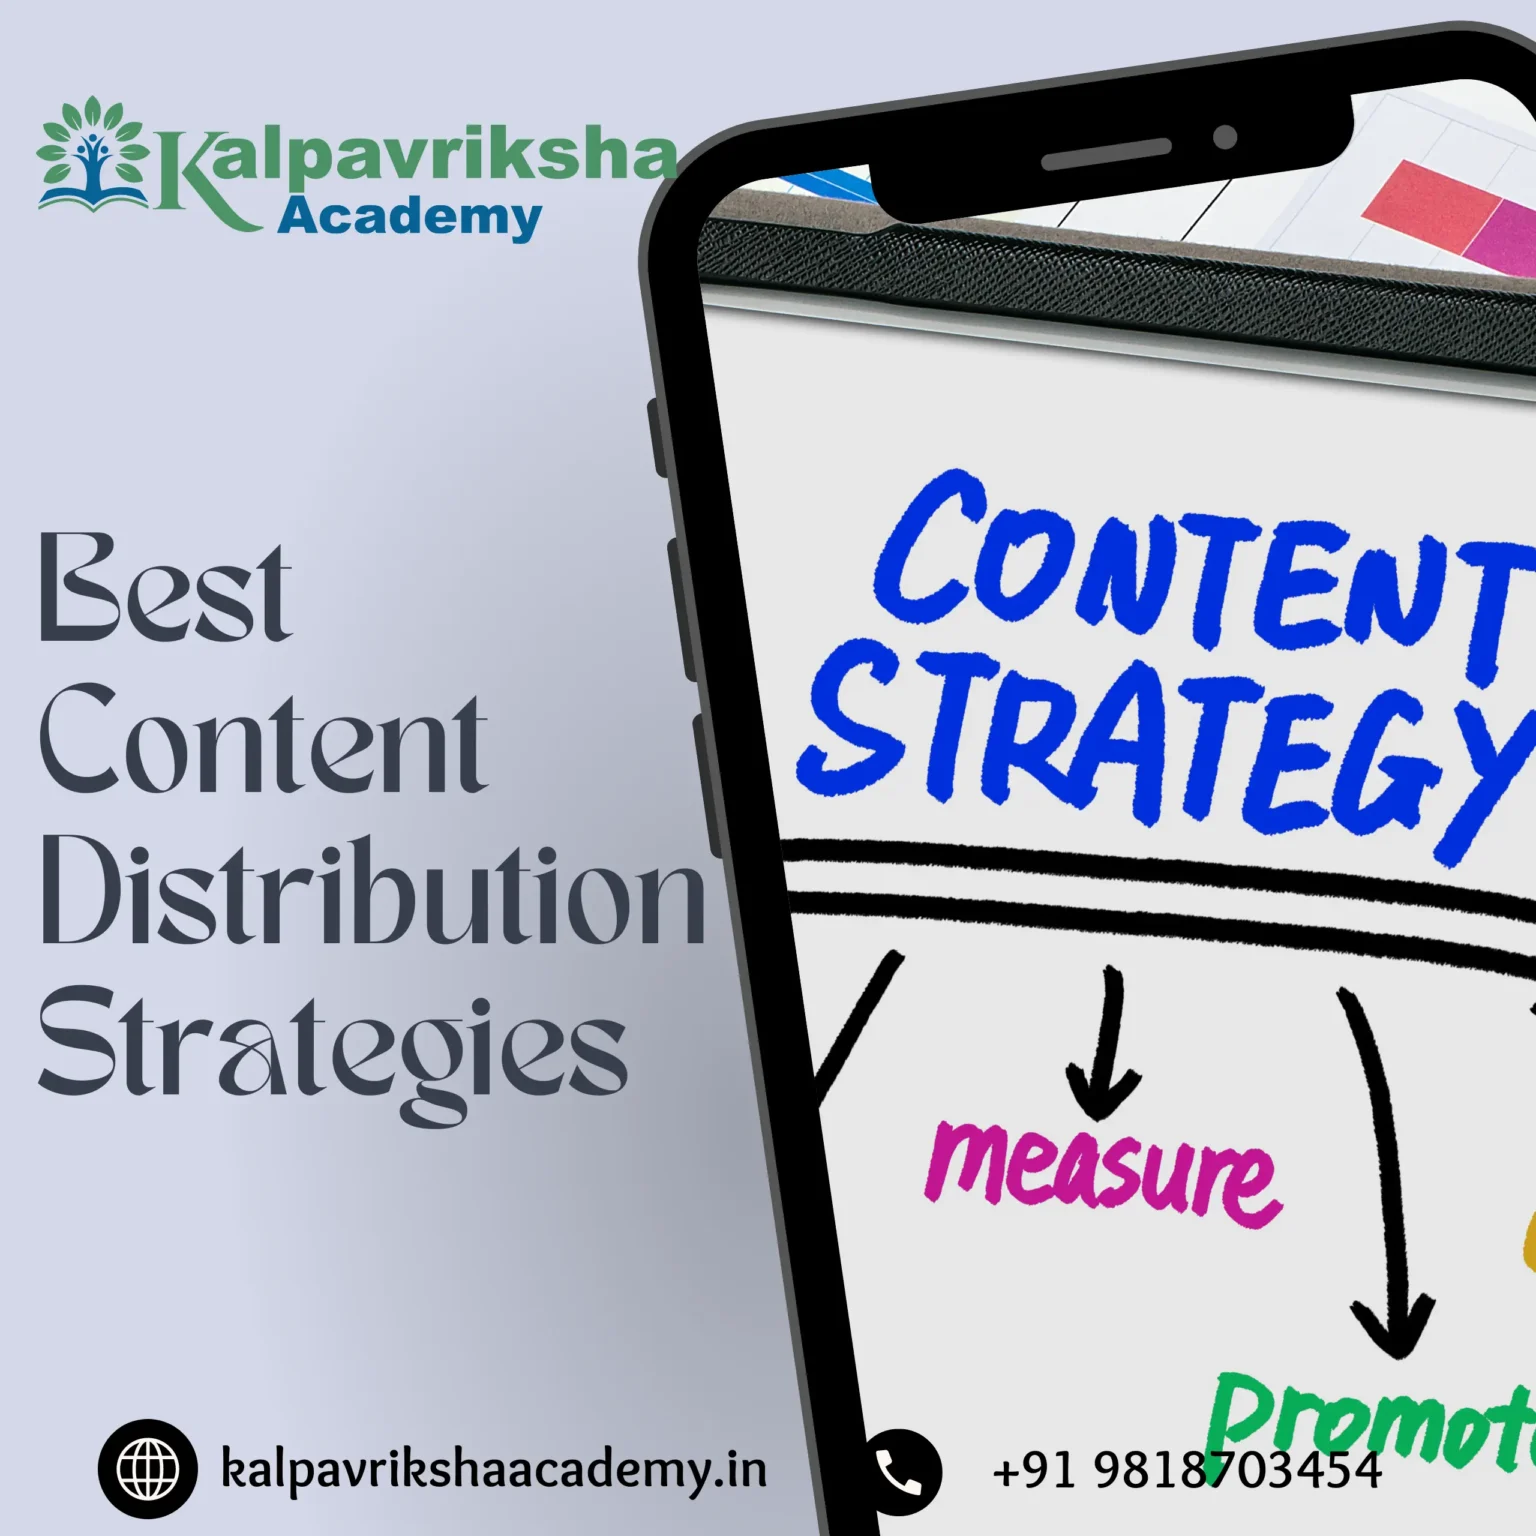 Best Content Distribution Strategies - Kalpavriksha Academy